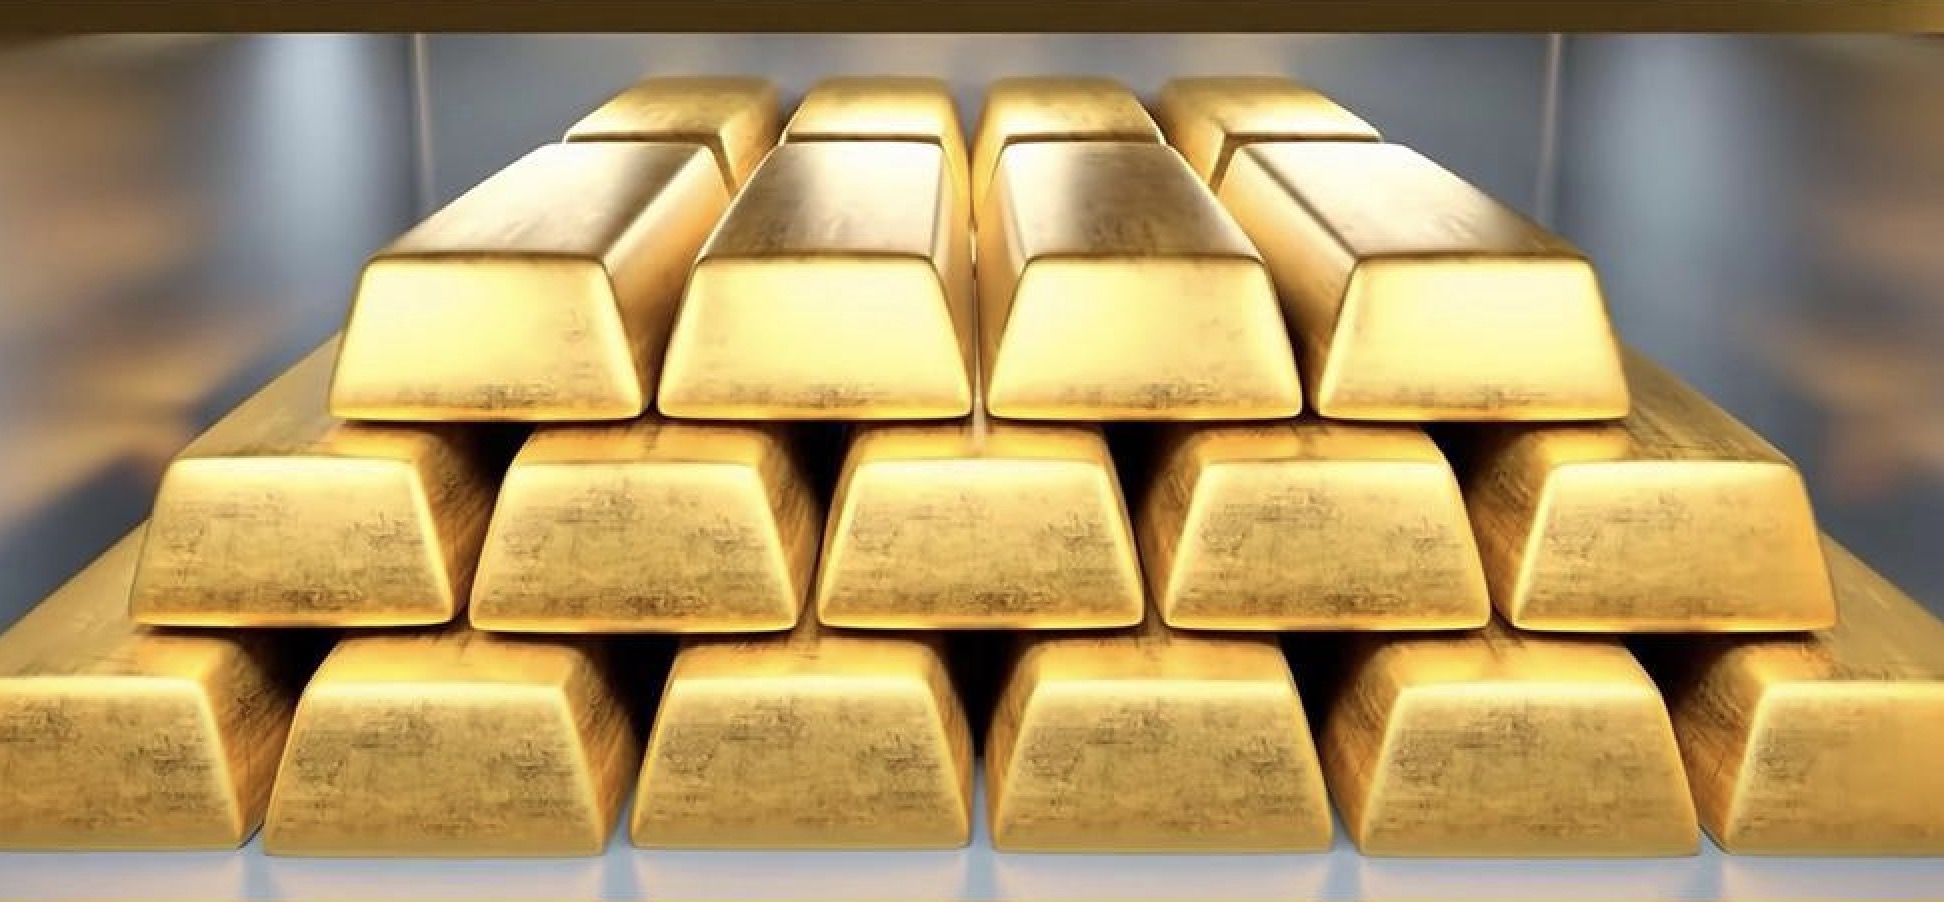 การแจ้งเตือนการซื้อขายทองคำ: GDP ของสหรัฐฯ ที่ย่ำแย่ส่งผลกระทบต่อดอลลาร์สหรัฐฯ ราคาทองคำยังคงเป็นแนวรับสำคัญในการต้อนรับข้อมูล PCE ของสหรัฐฯ